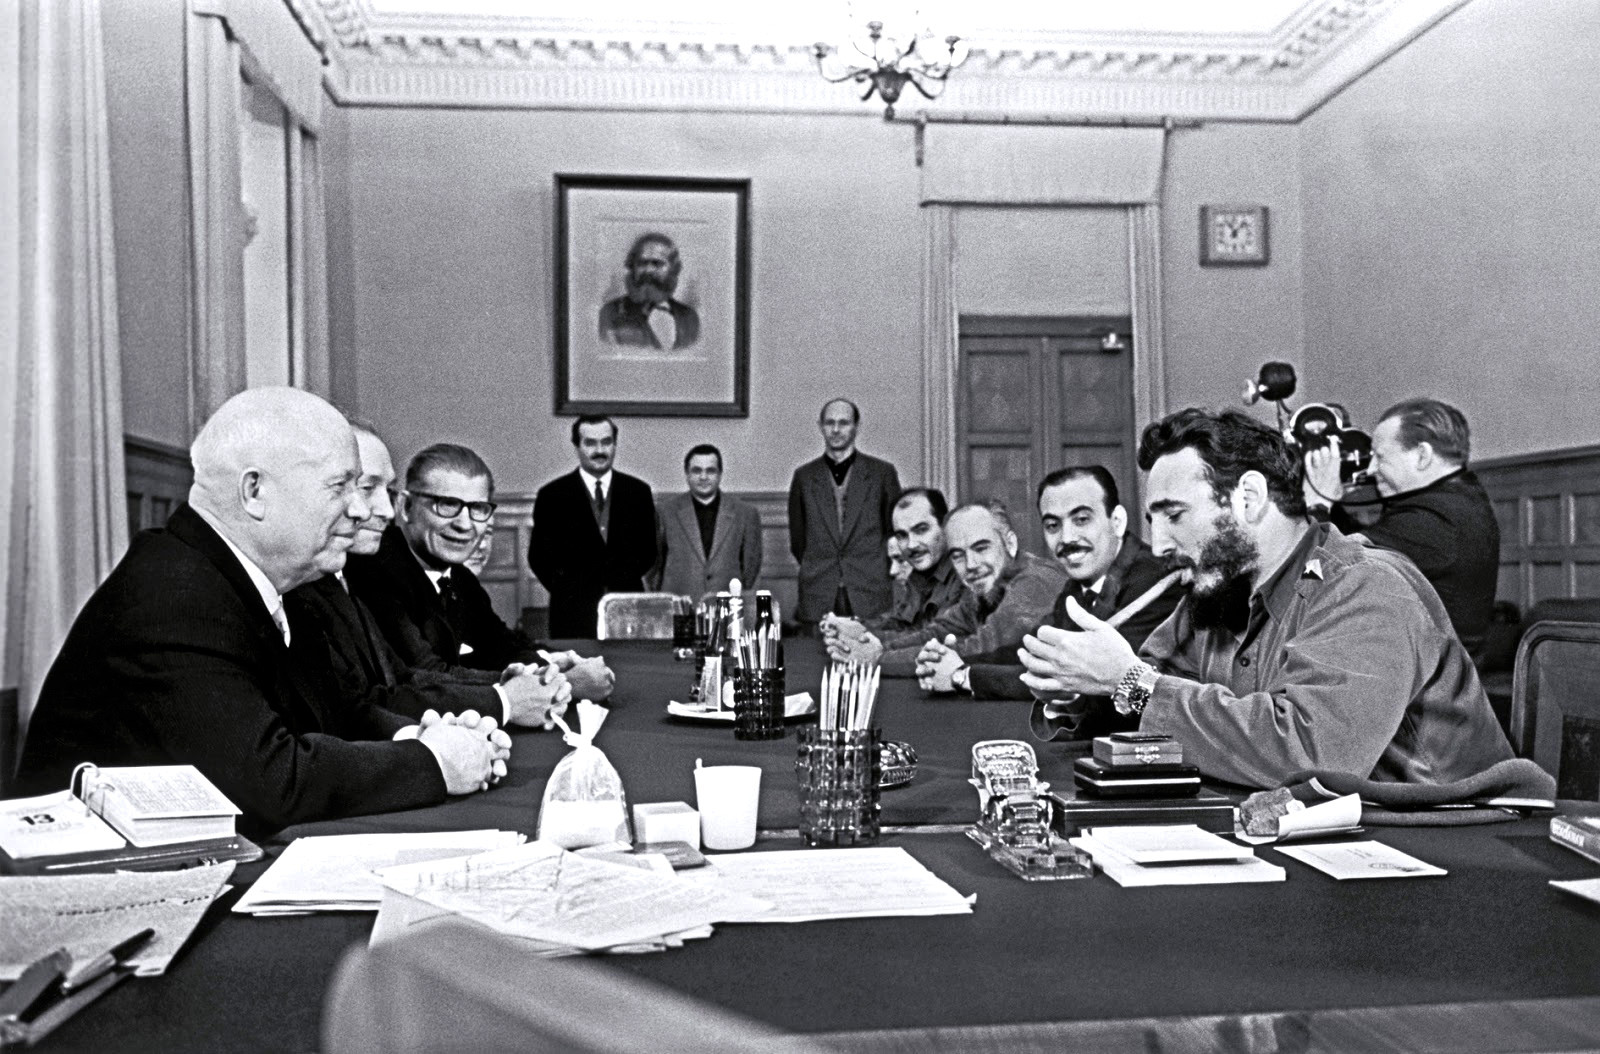 1967. Fidel Castro Moszkvában a Kremlben éppen szivarra gyújt. De nem ez az érdekes. Nézzétek a csuklóját. Két óra van rajta és mindkettő Rolex..jpg